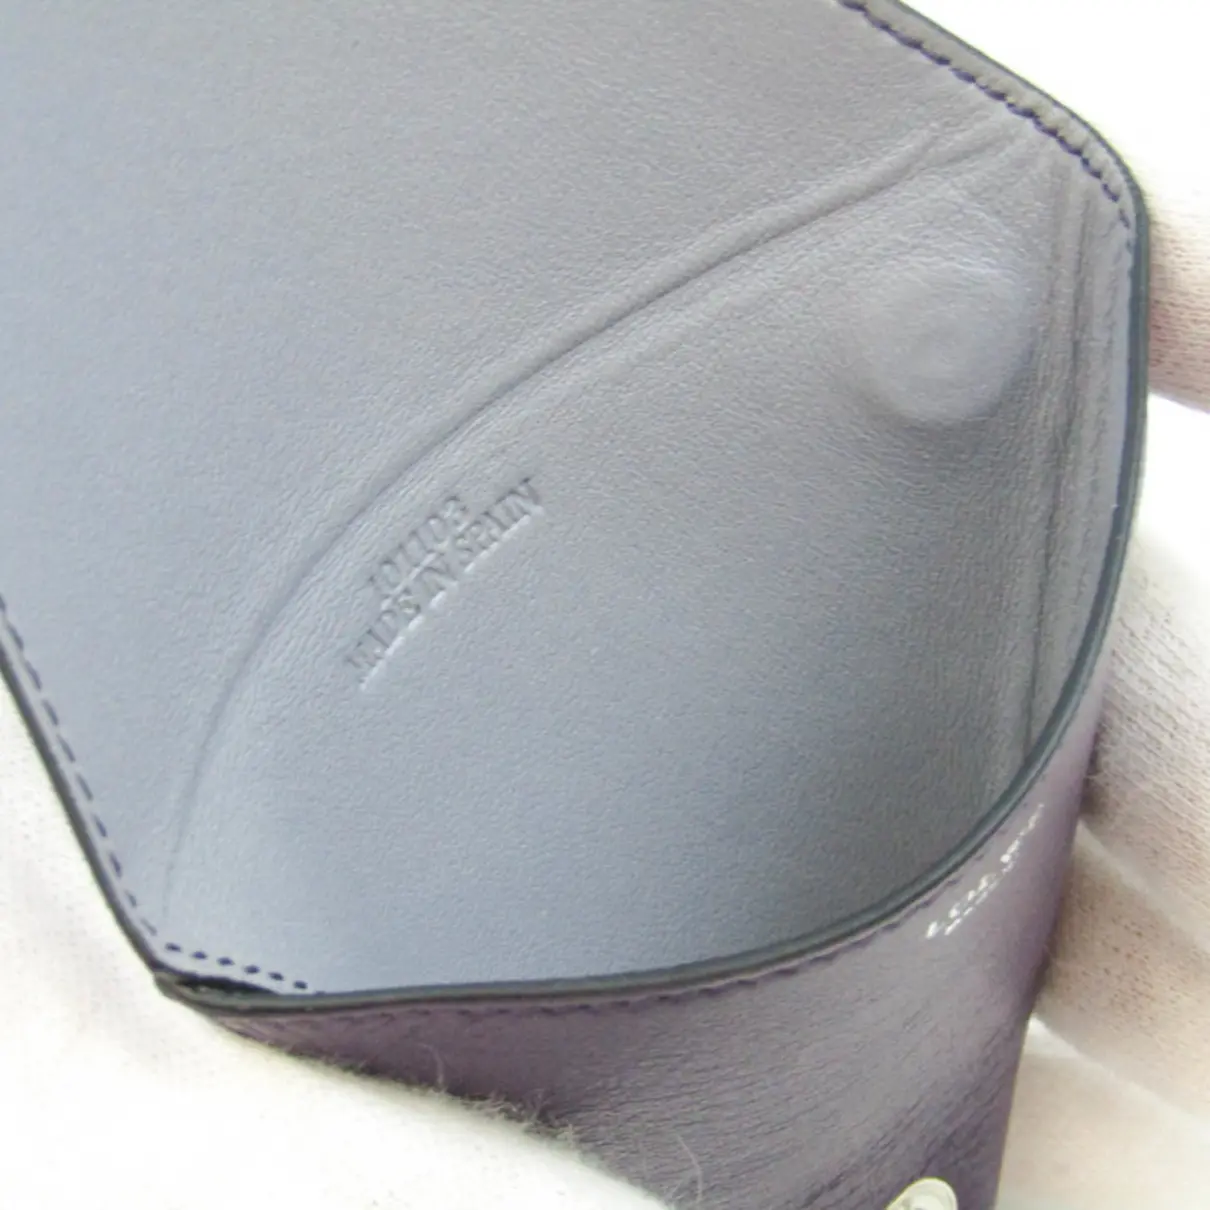 Luxury Loewe Small bags, wallets & cases Men